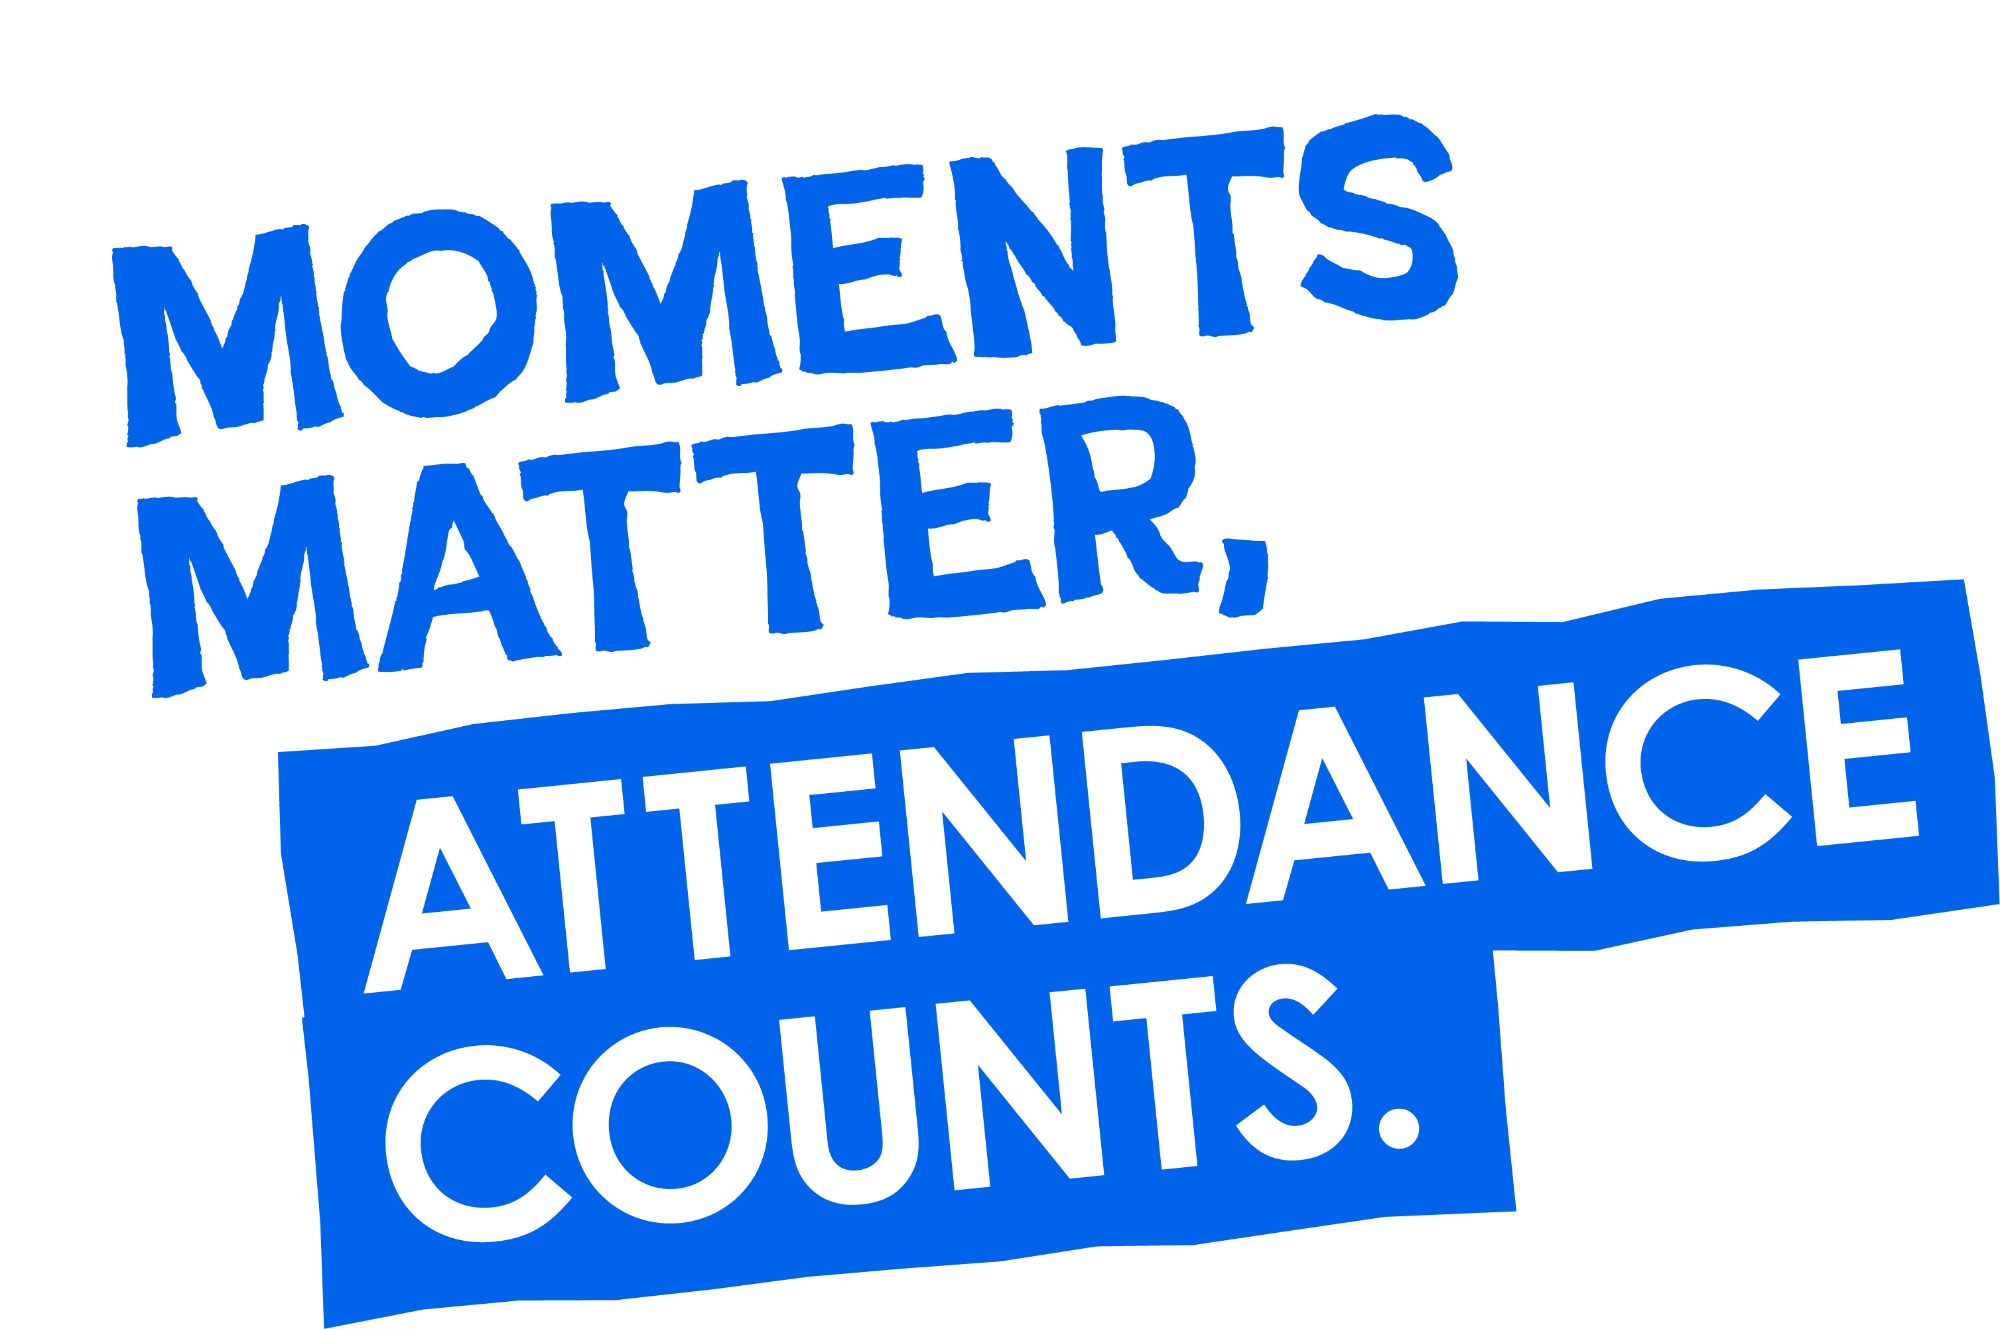 Moments matter, attendance counts